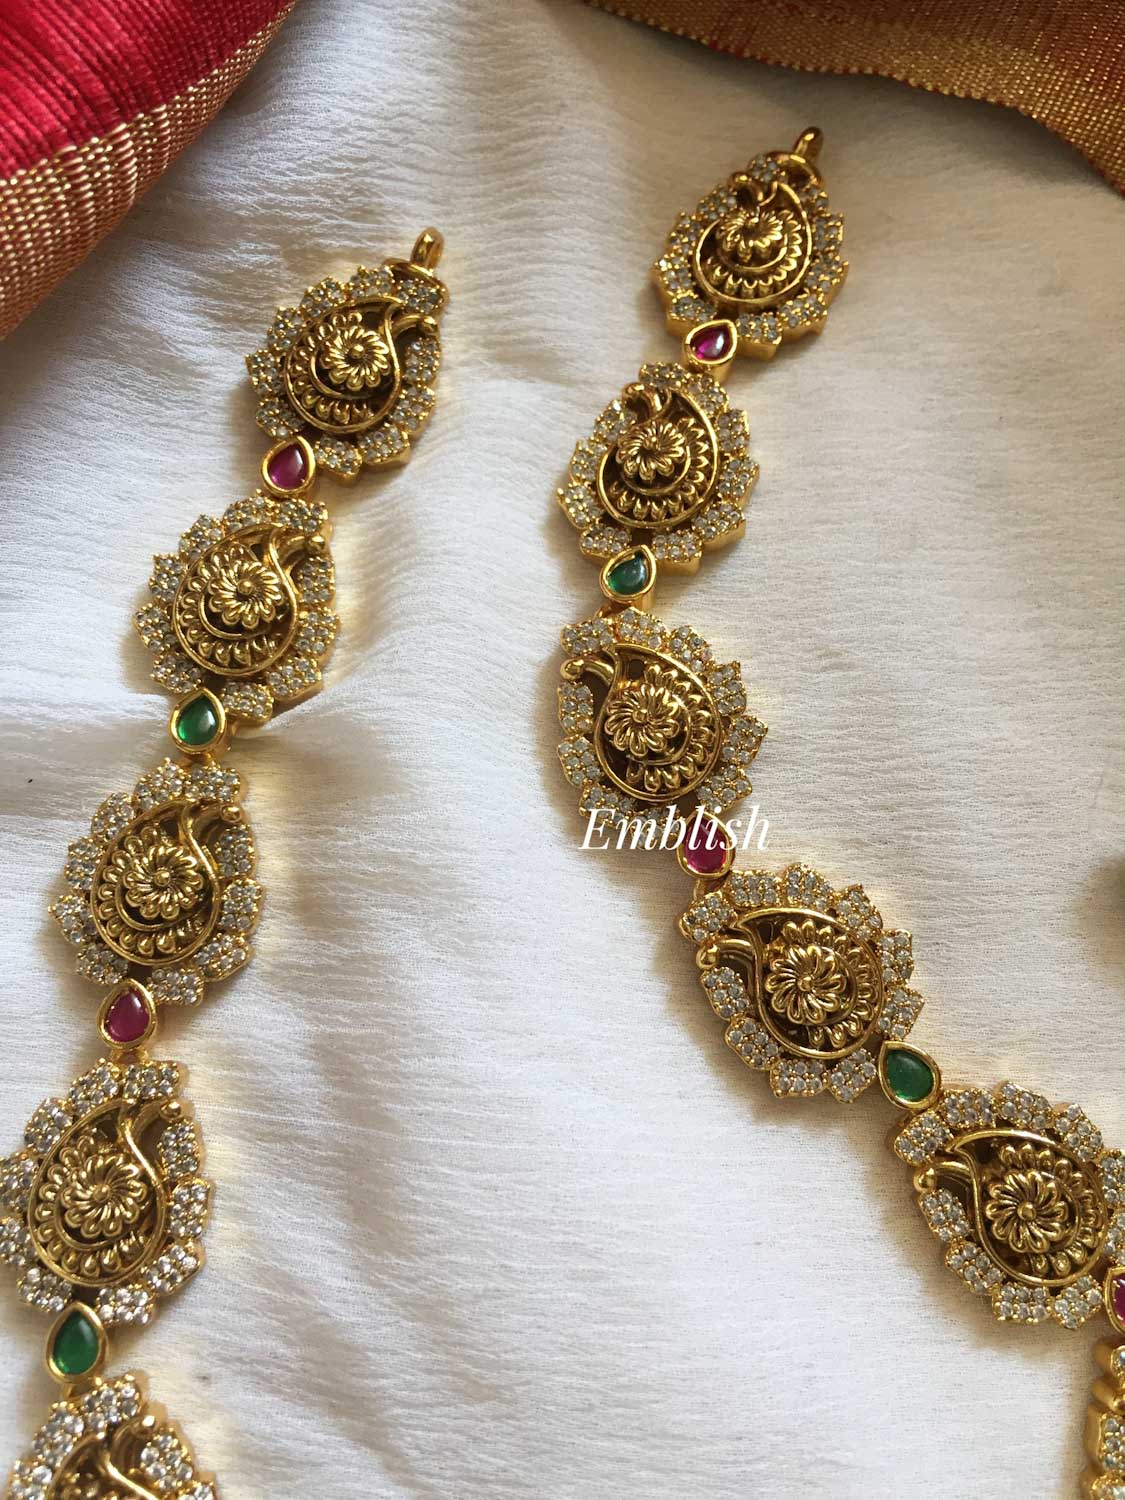 Antique Lakshmi with double peacock Neckpiece